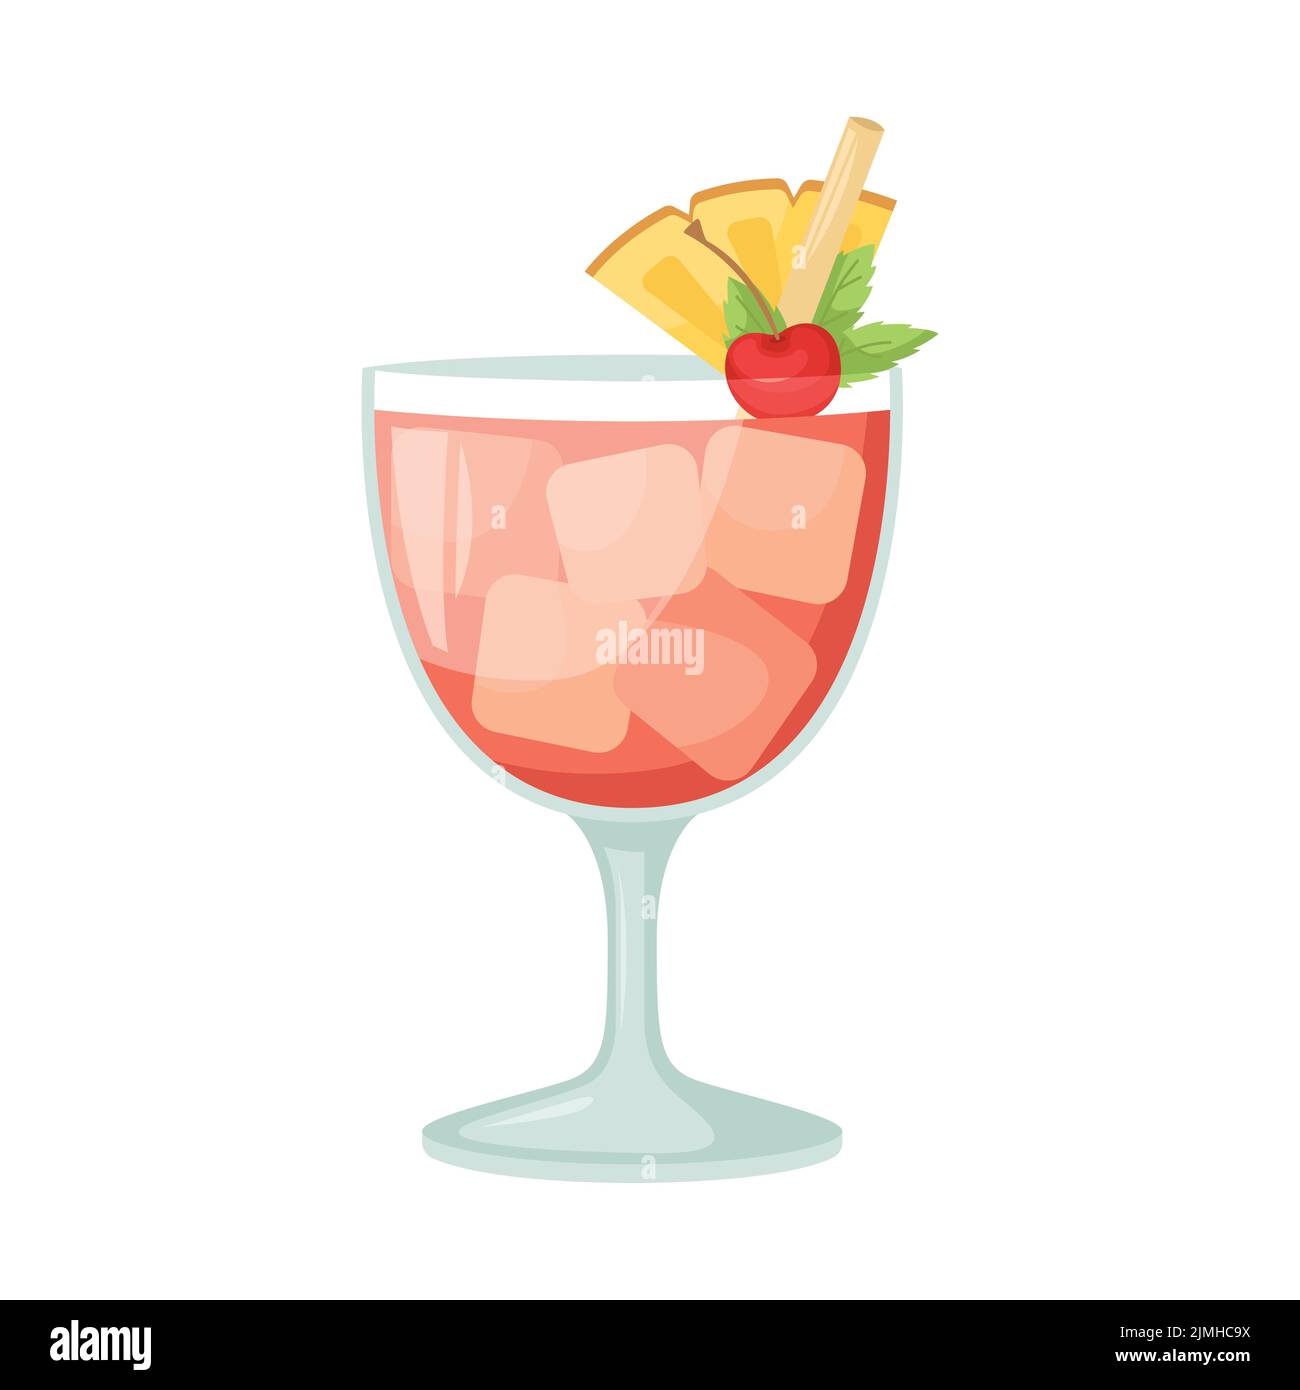 Vektor-Illustration eines Club-Alkoholcocktails. Mai Tai Stock Vektor